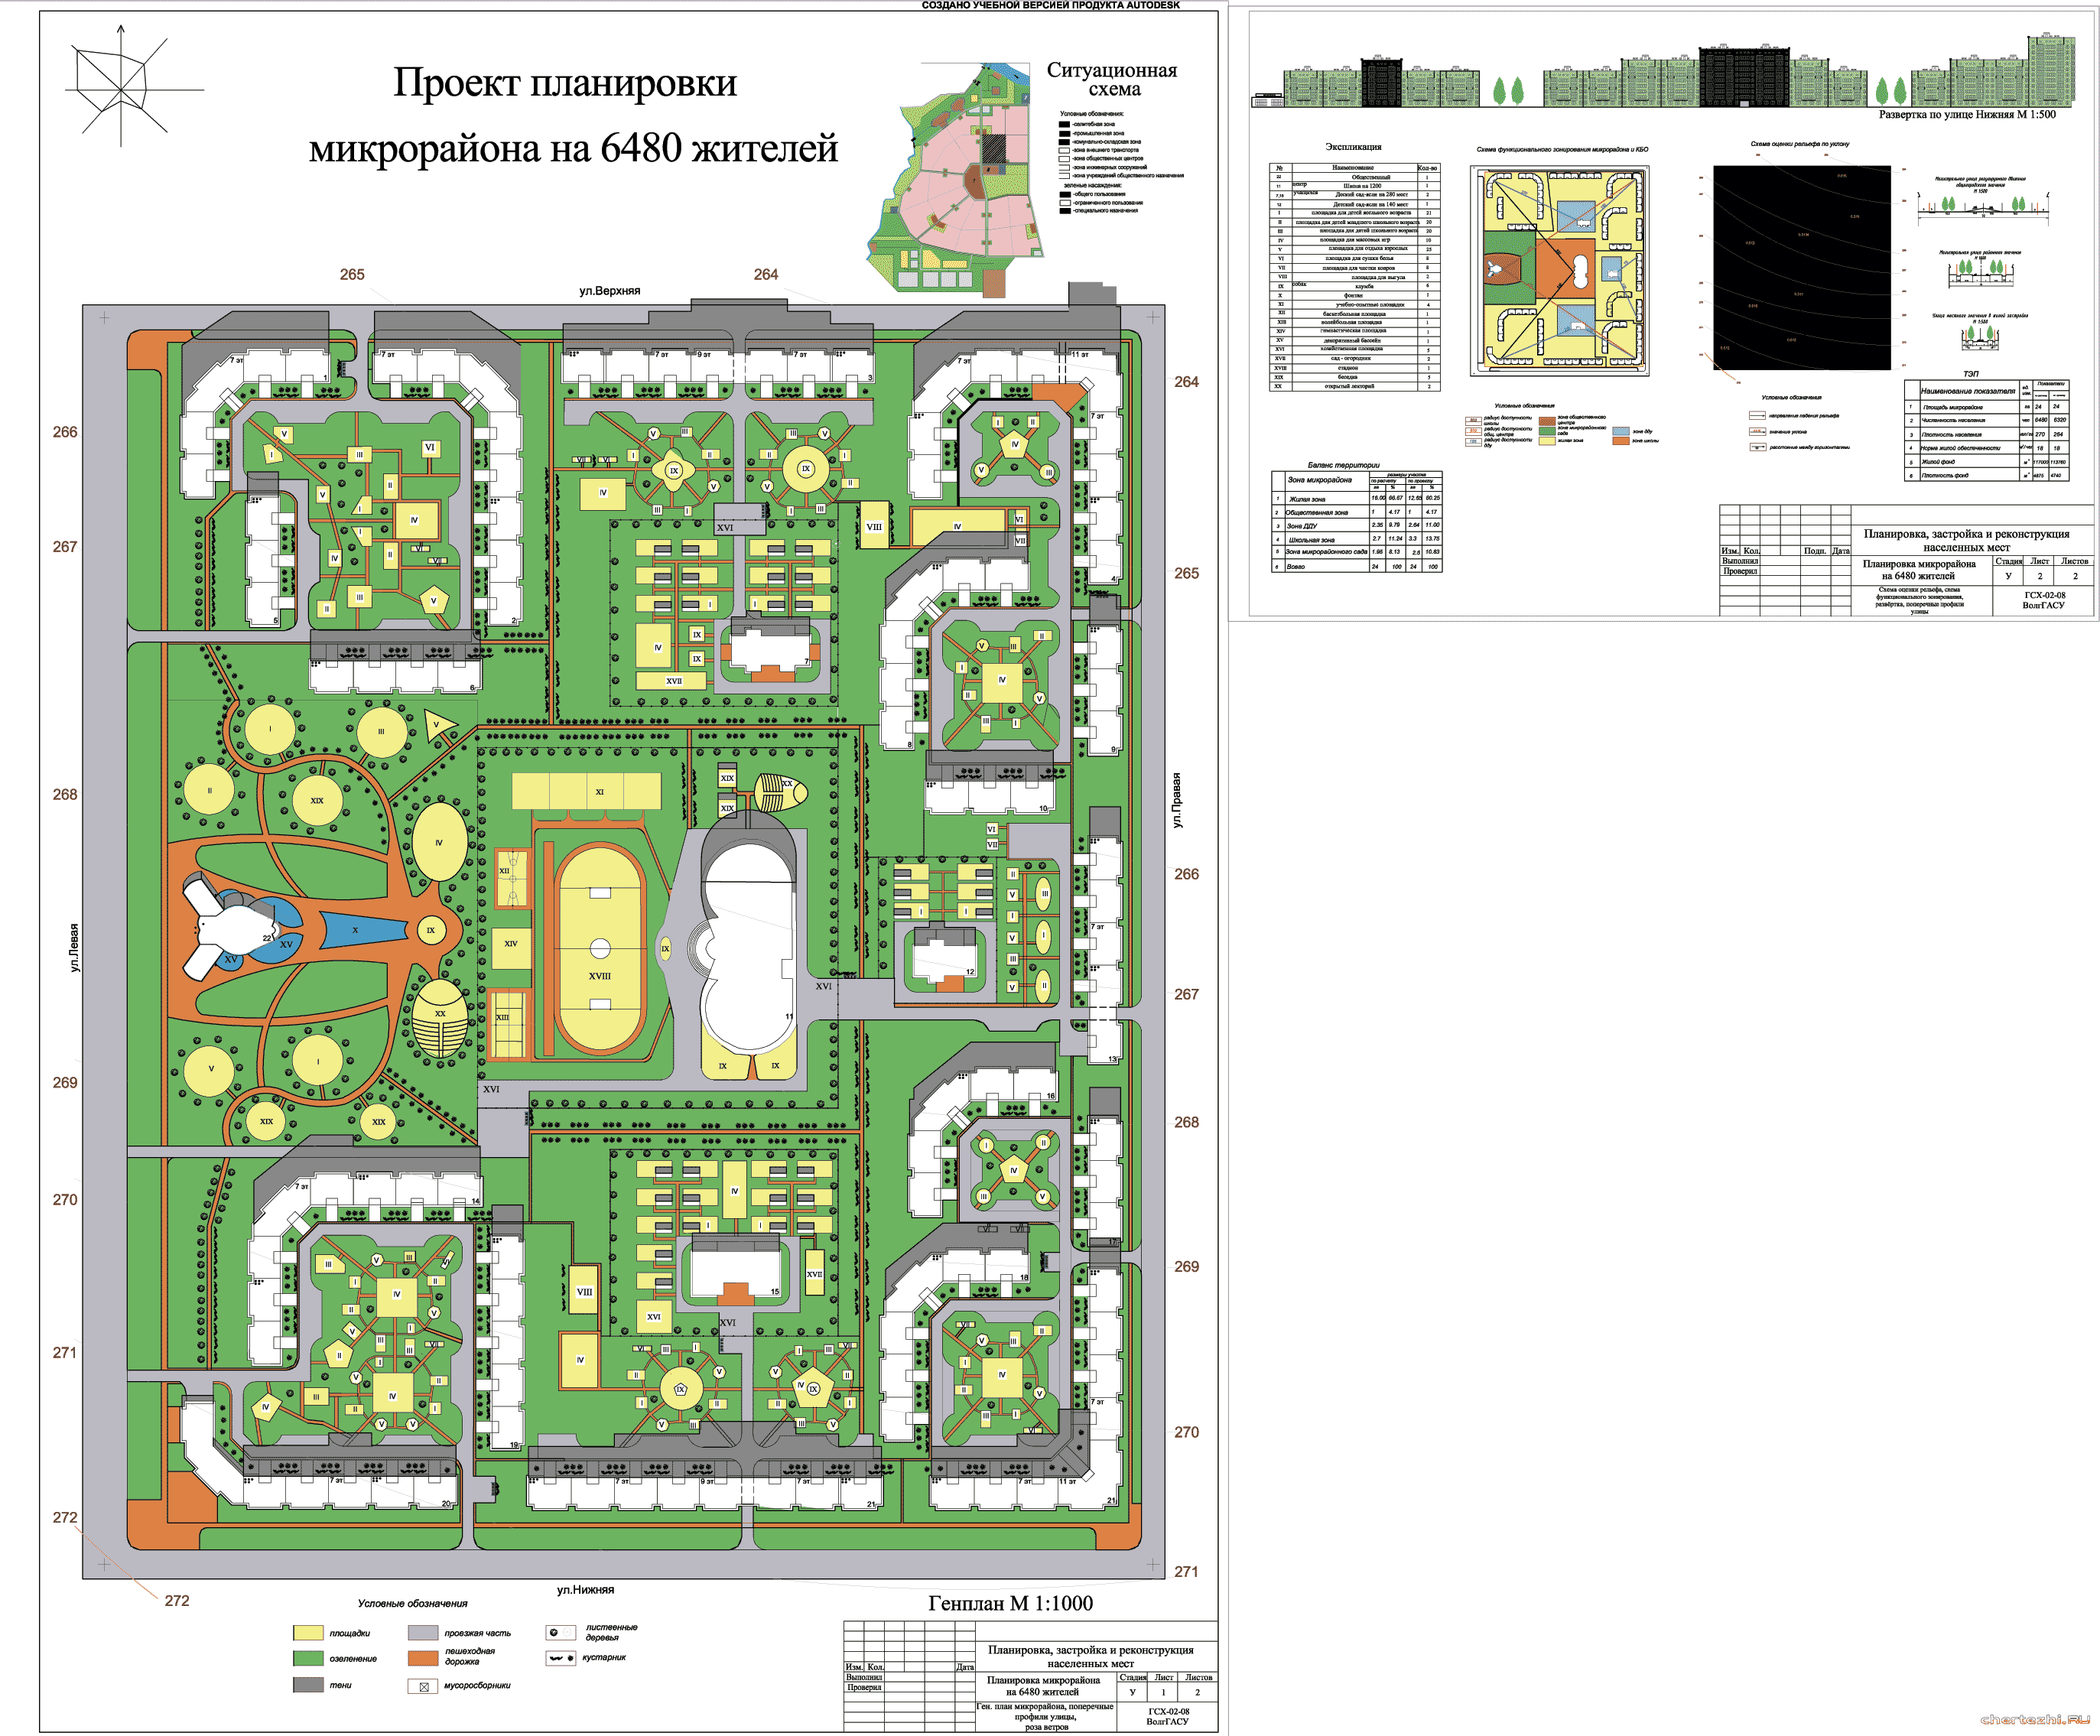 Курсовая работа по теме Разработка целевого муниципального проекта по благоустройству парков города-курорта Сочи